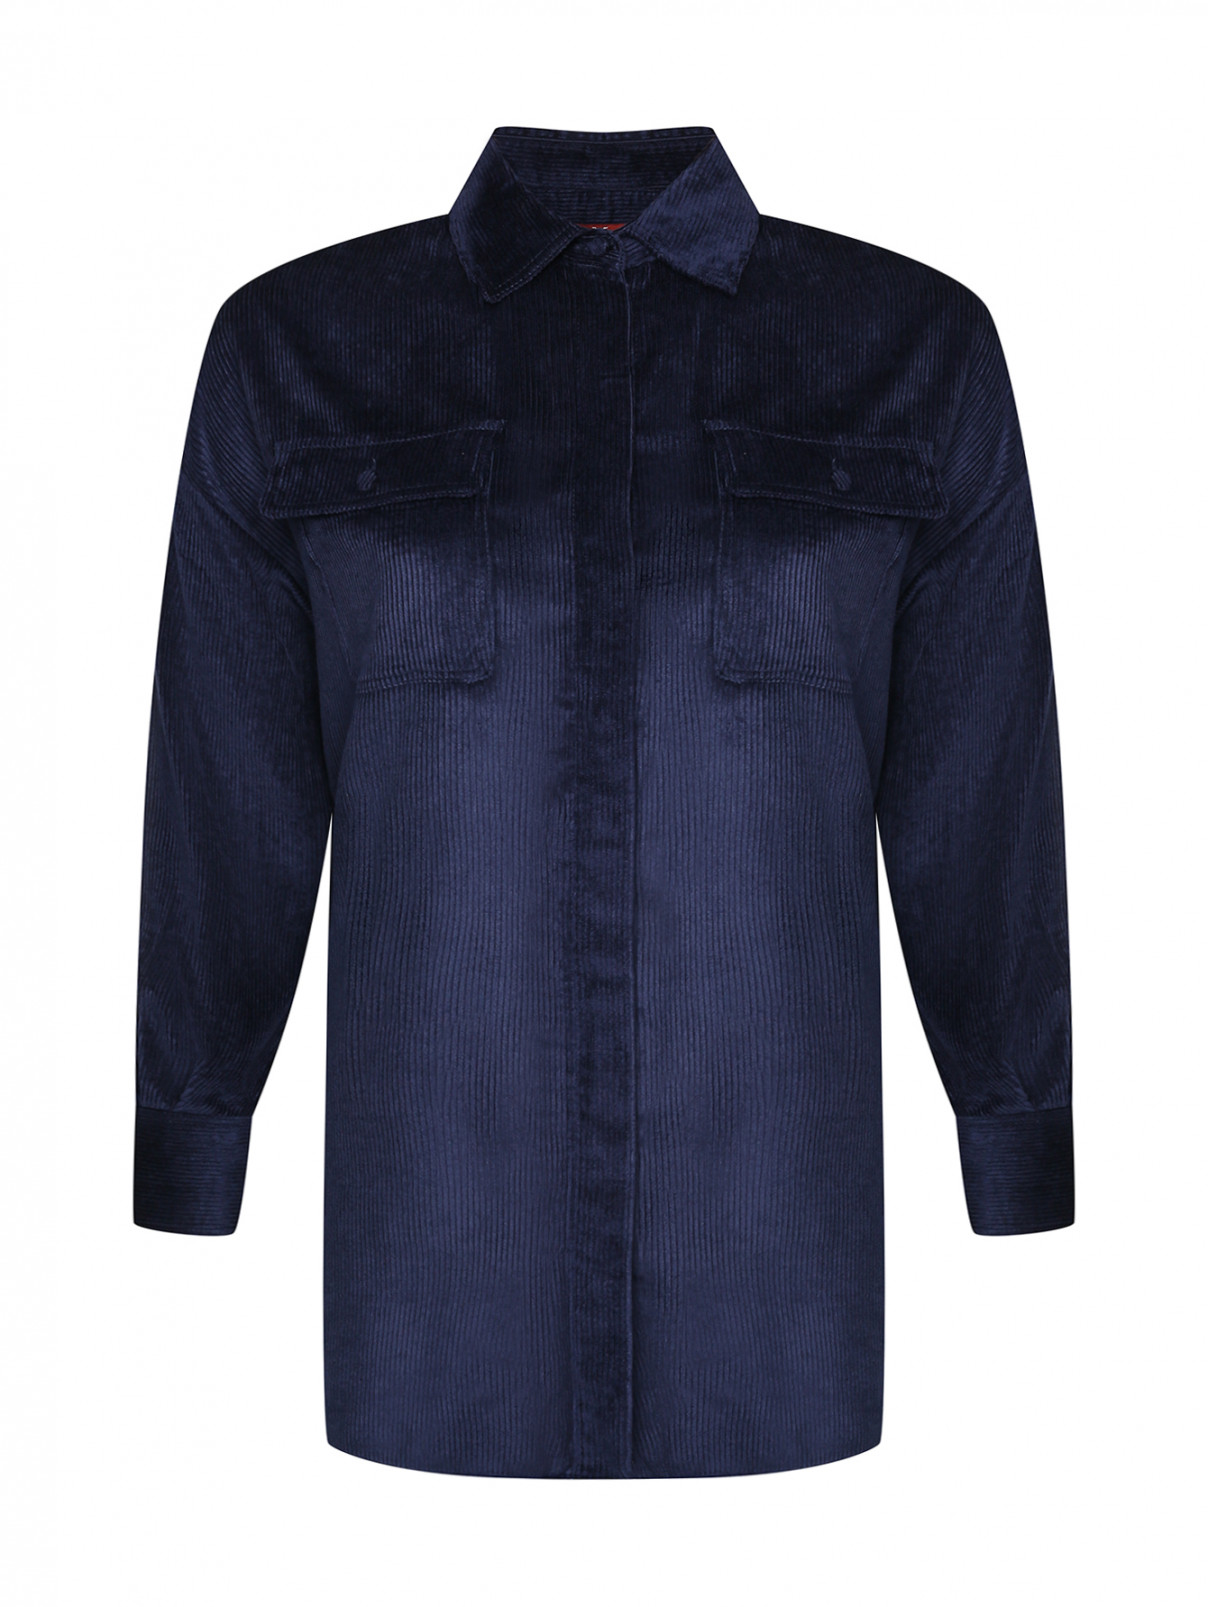 Вельветовая рубашка с карманами Max Mara  –  Общий вид  – Цвет:  Синий